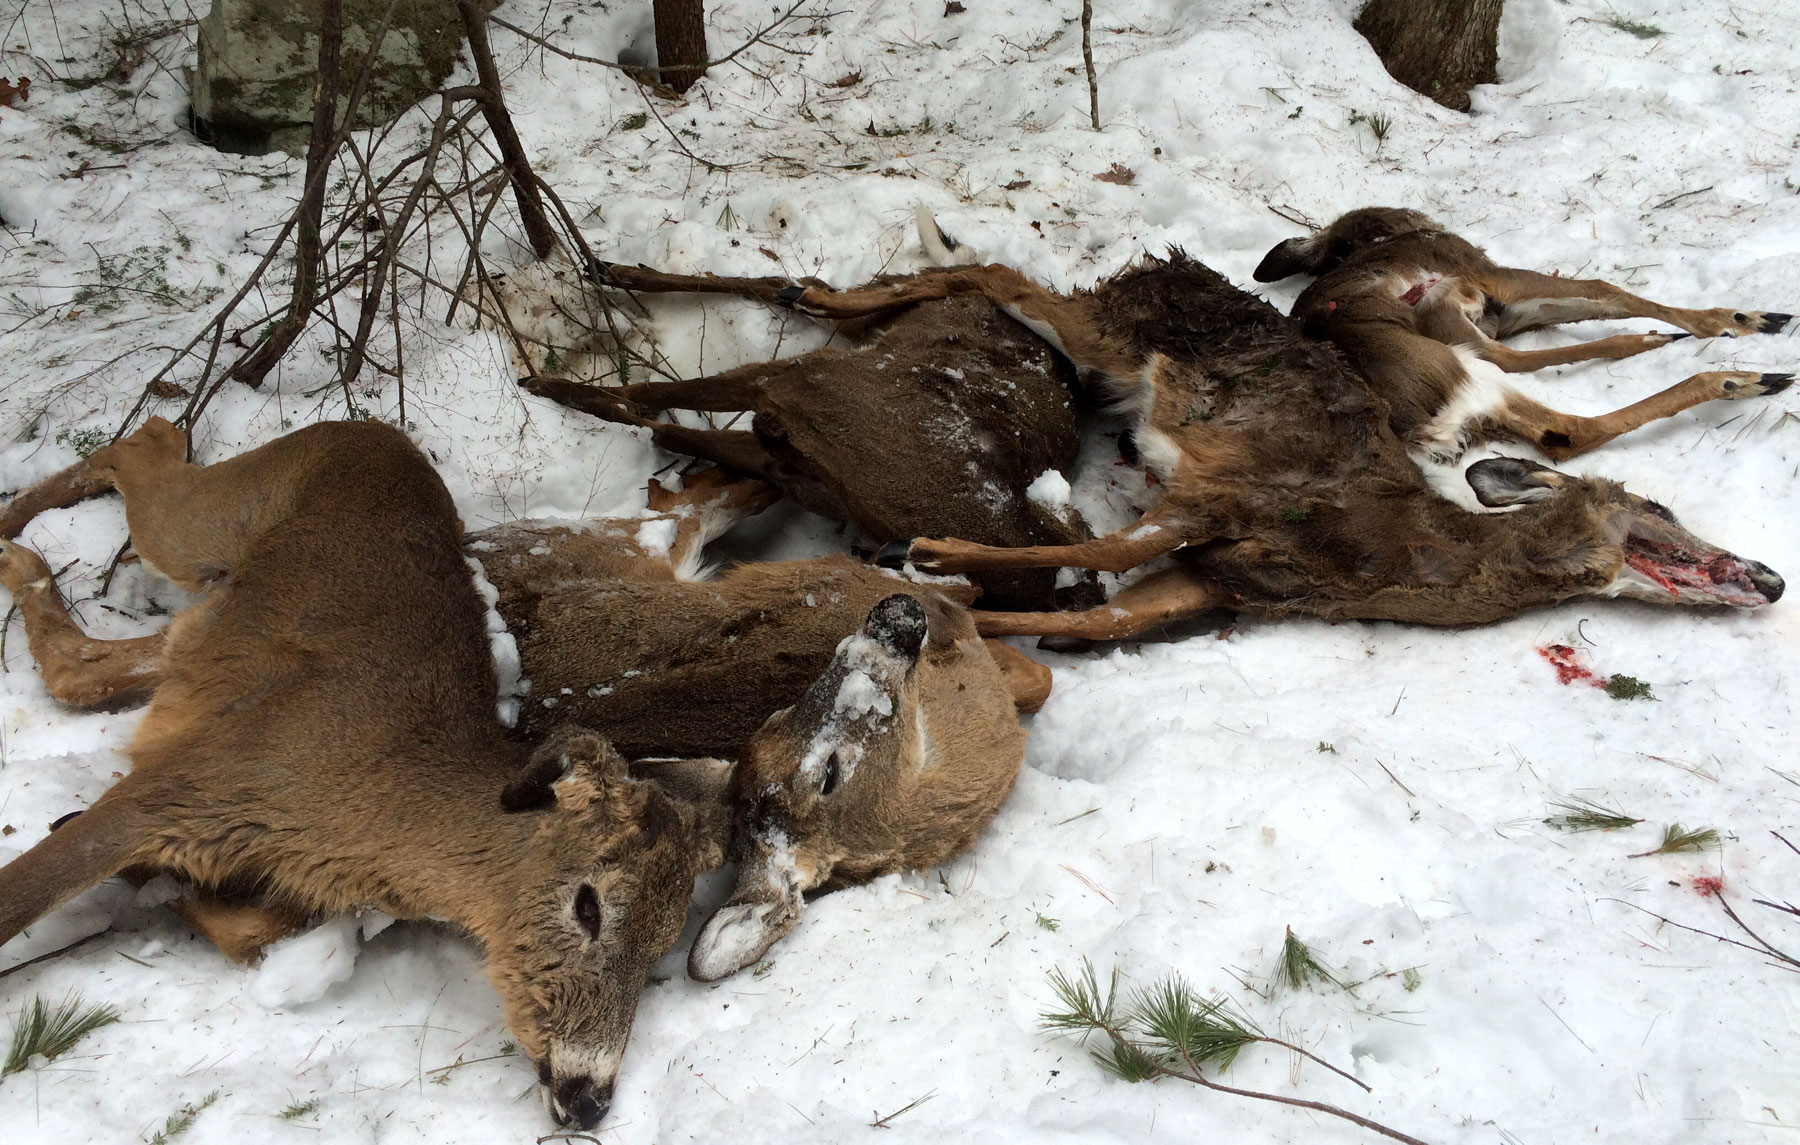 Deer Feeders 101 | Deer Feeding Tips, Concerns, and Strategies ...